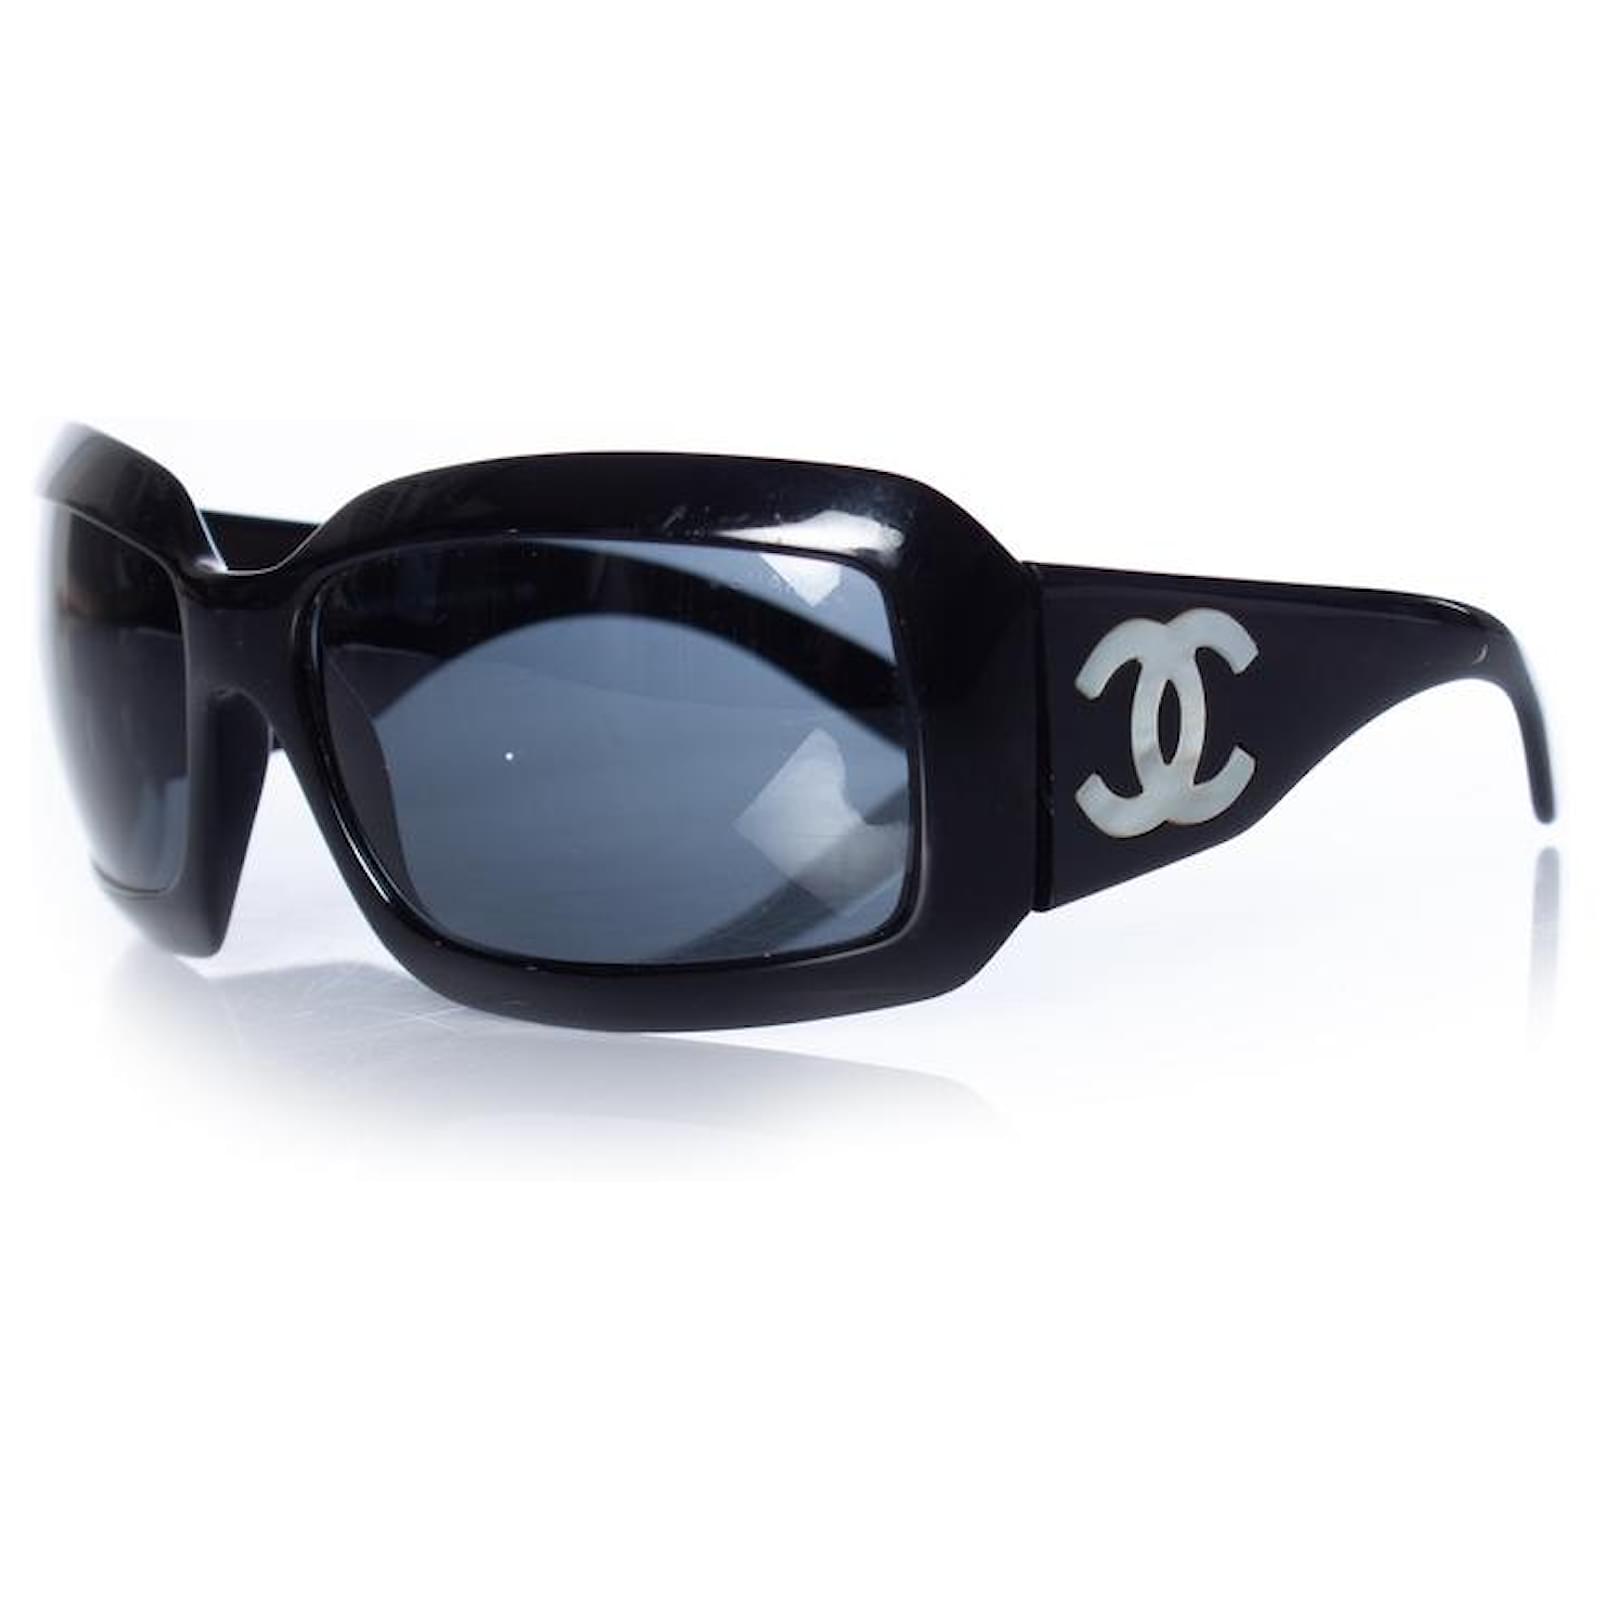 cc chanel sunglasses